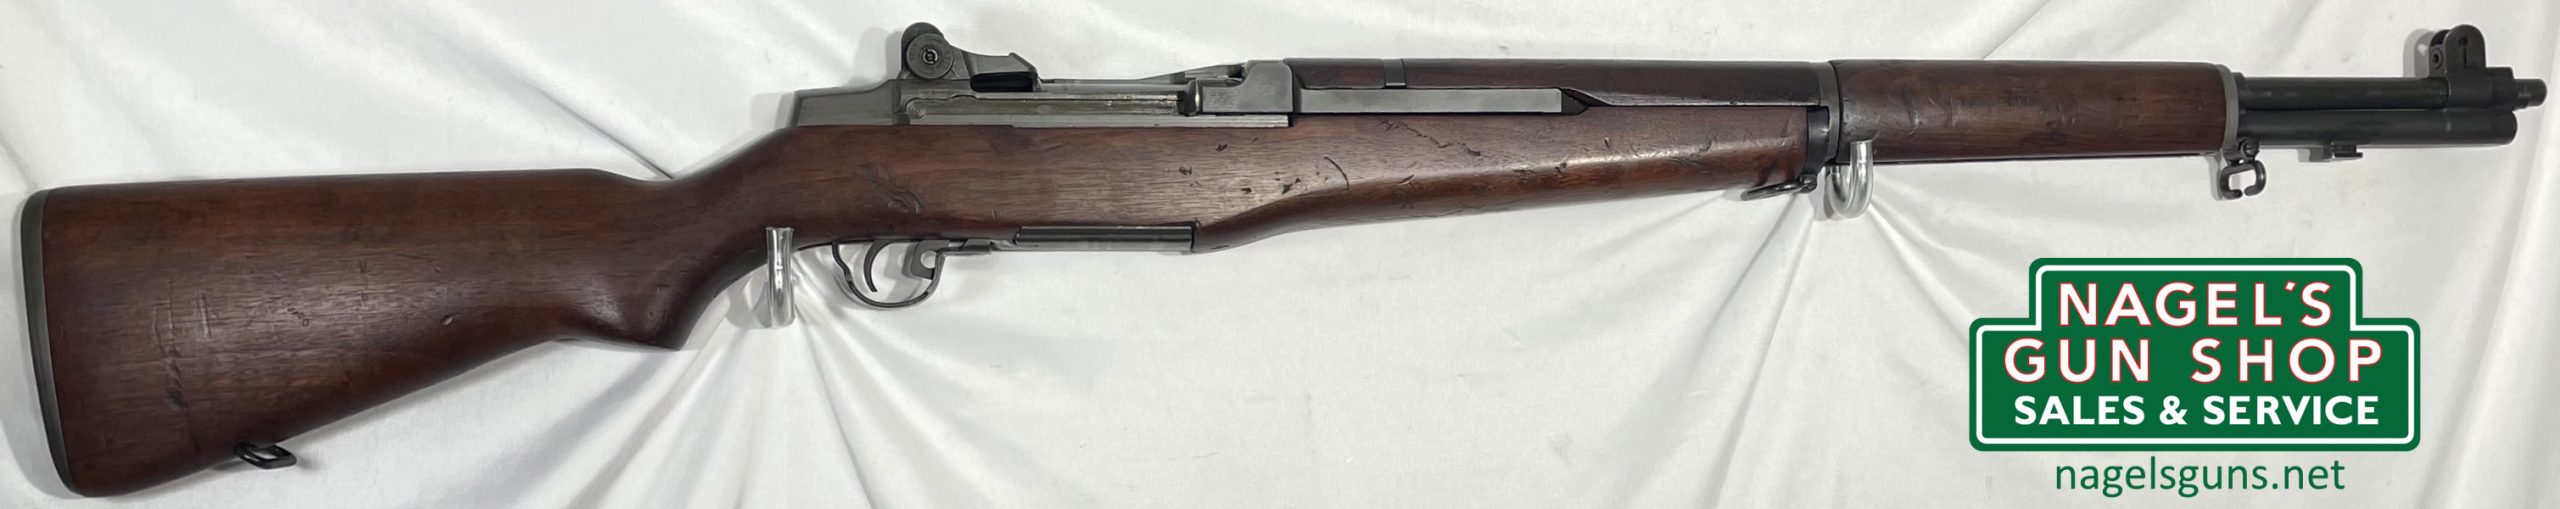 H&R M1 Garand 30Cal Rifle